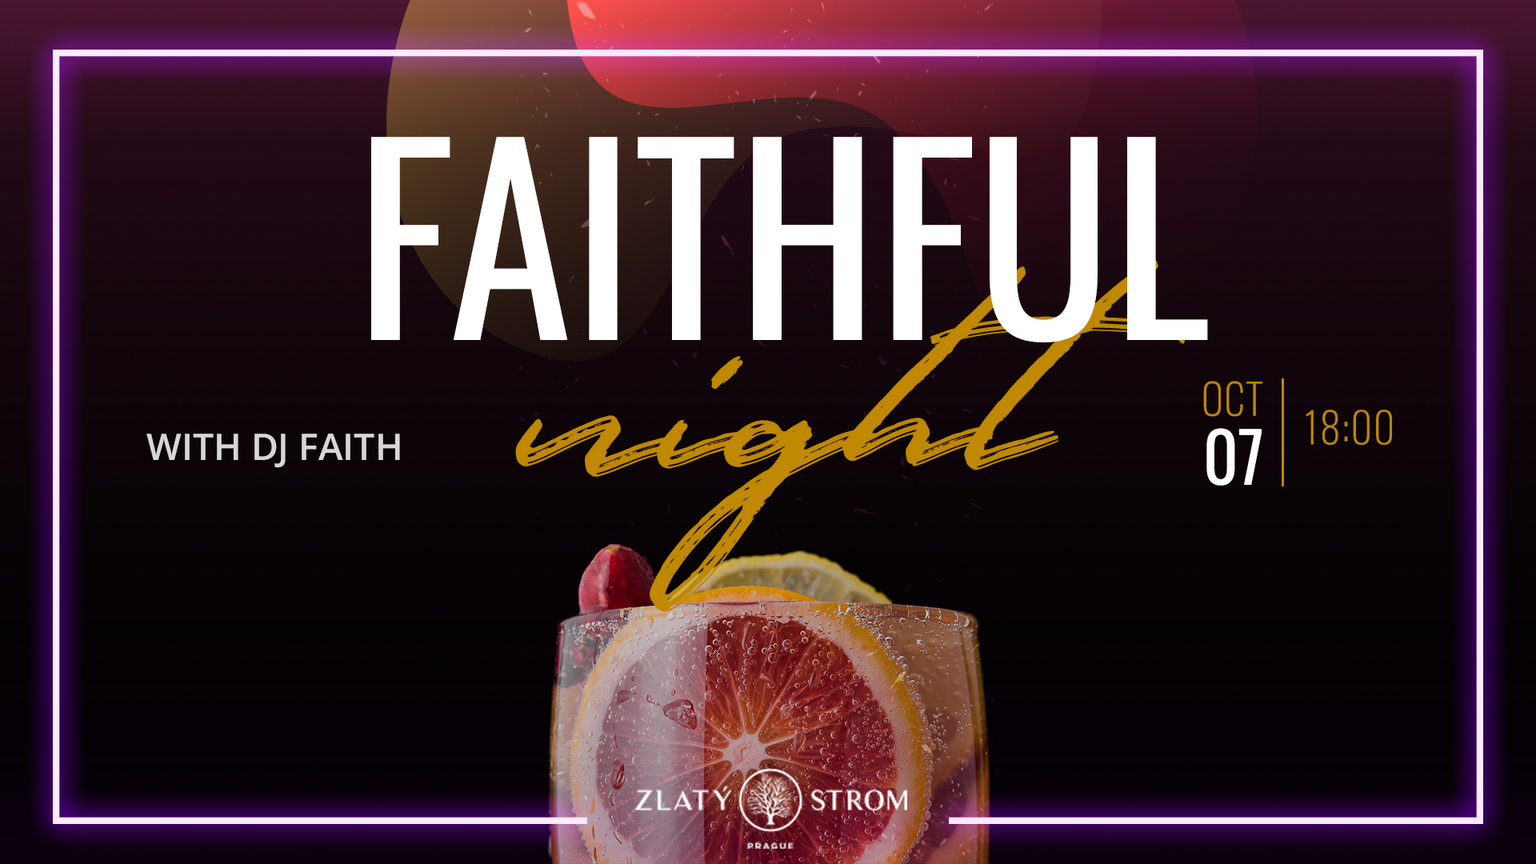 FAITHFUL NIGHT